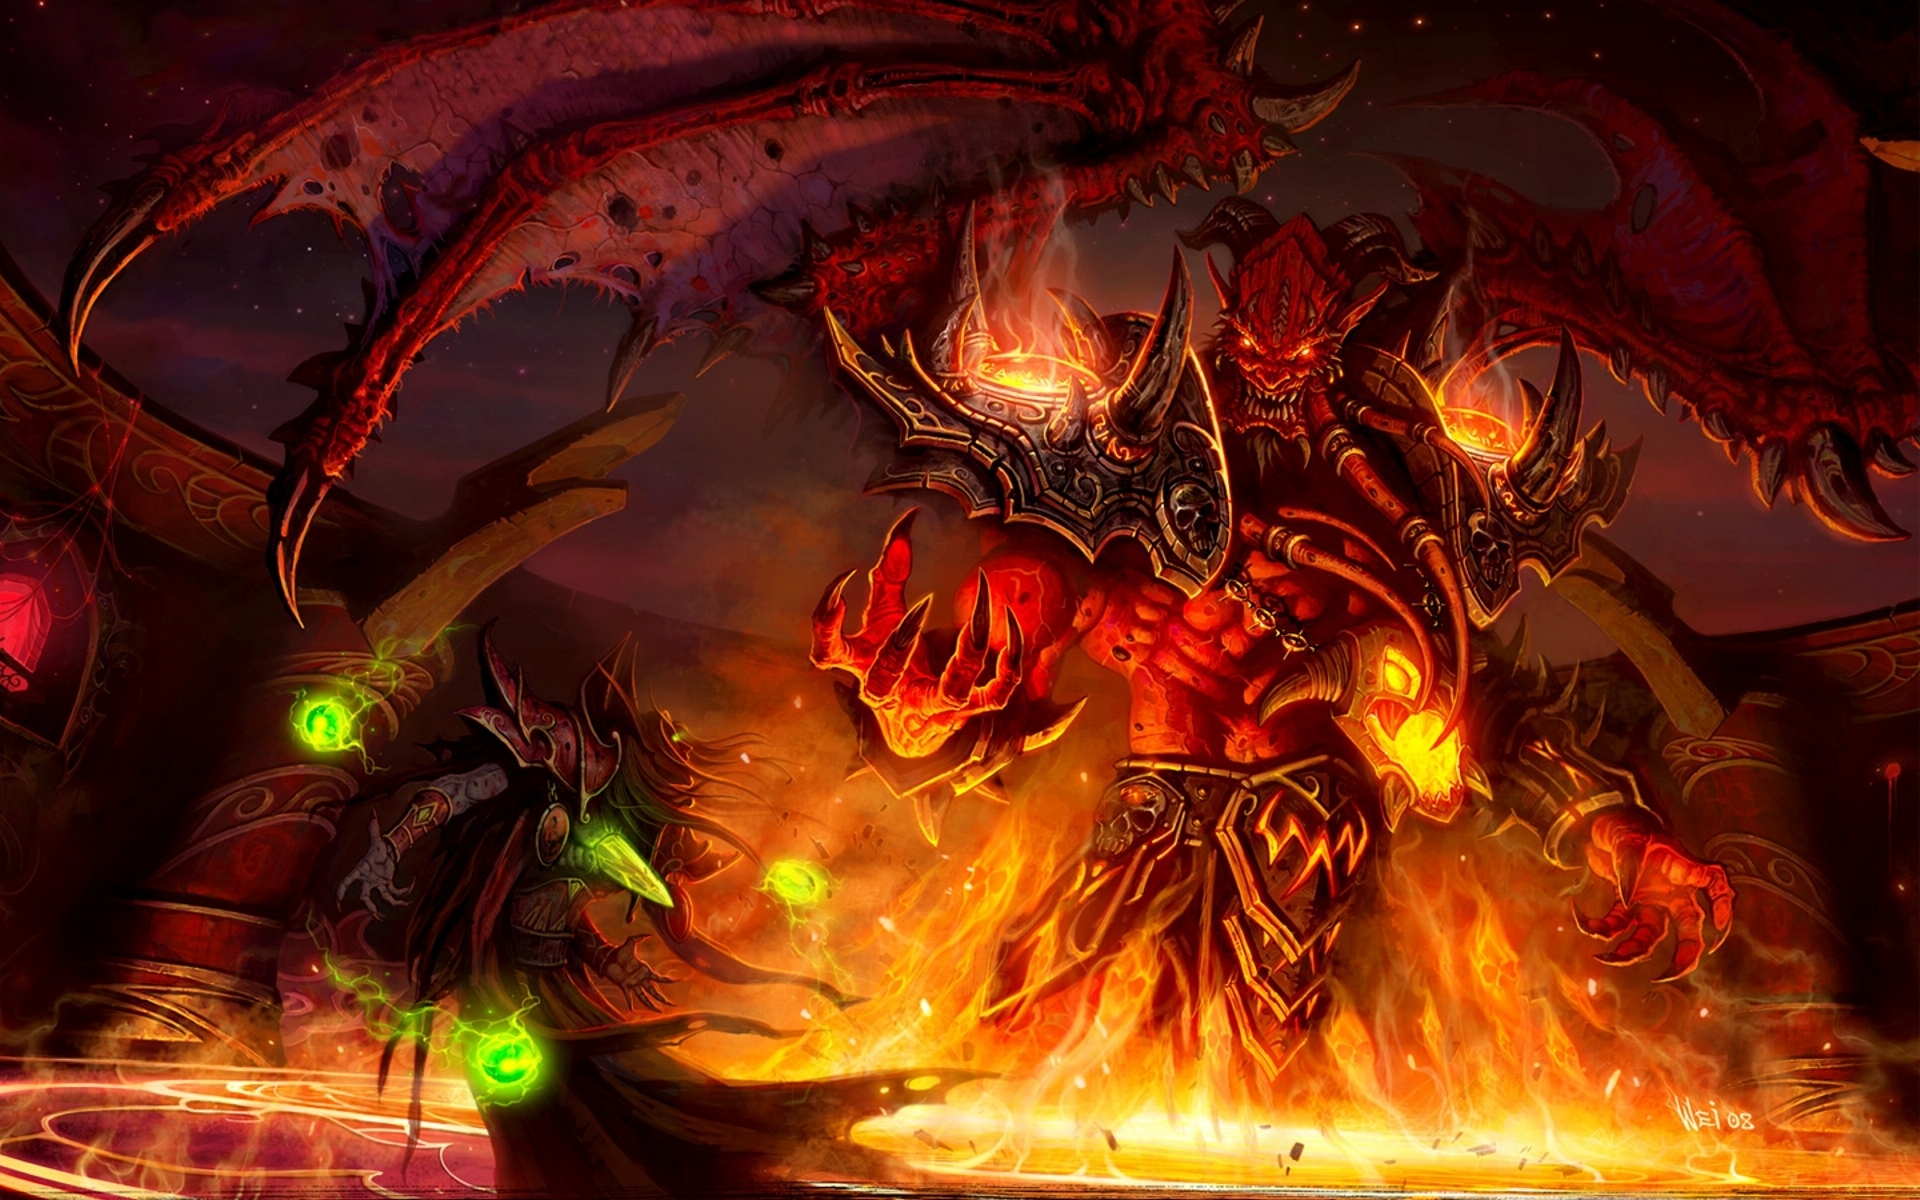 General 1920x1200 World of Warcraft demon artwork video games fantasy art Kael'thas video game art PC gaming Kil'jaeden